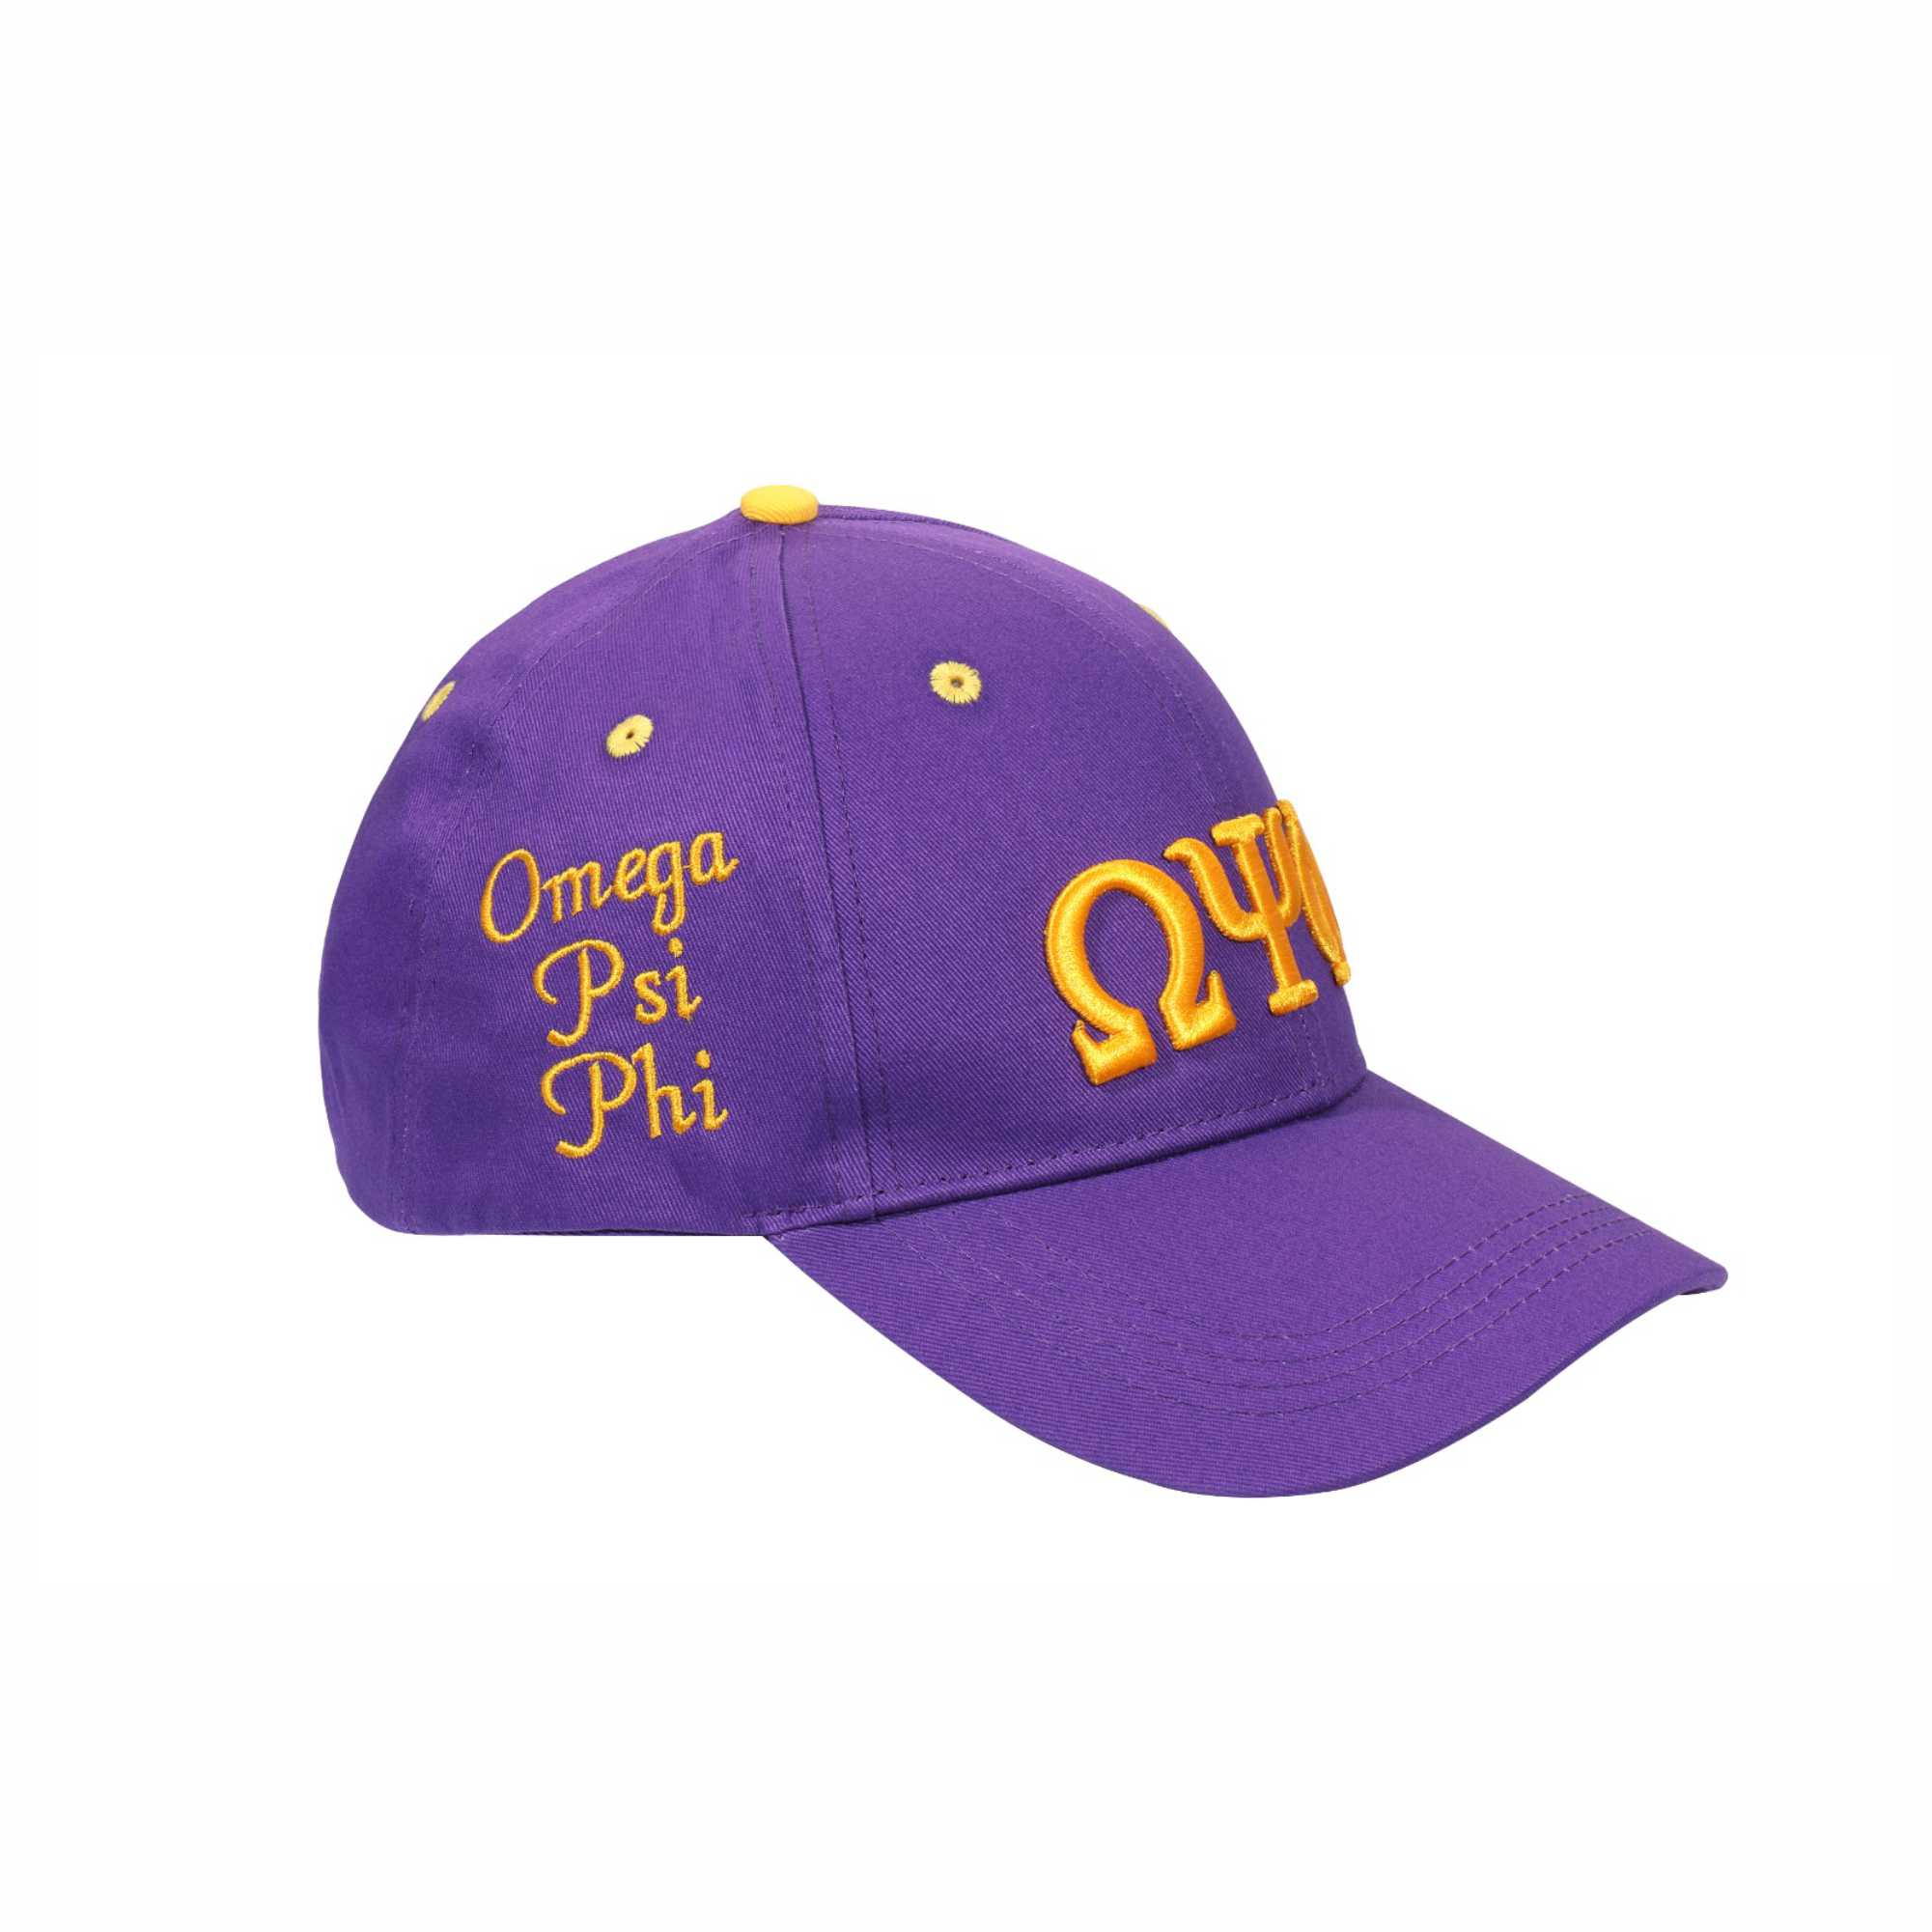 Unique Omega Psi Phi Baseball Cap